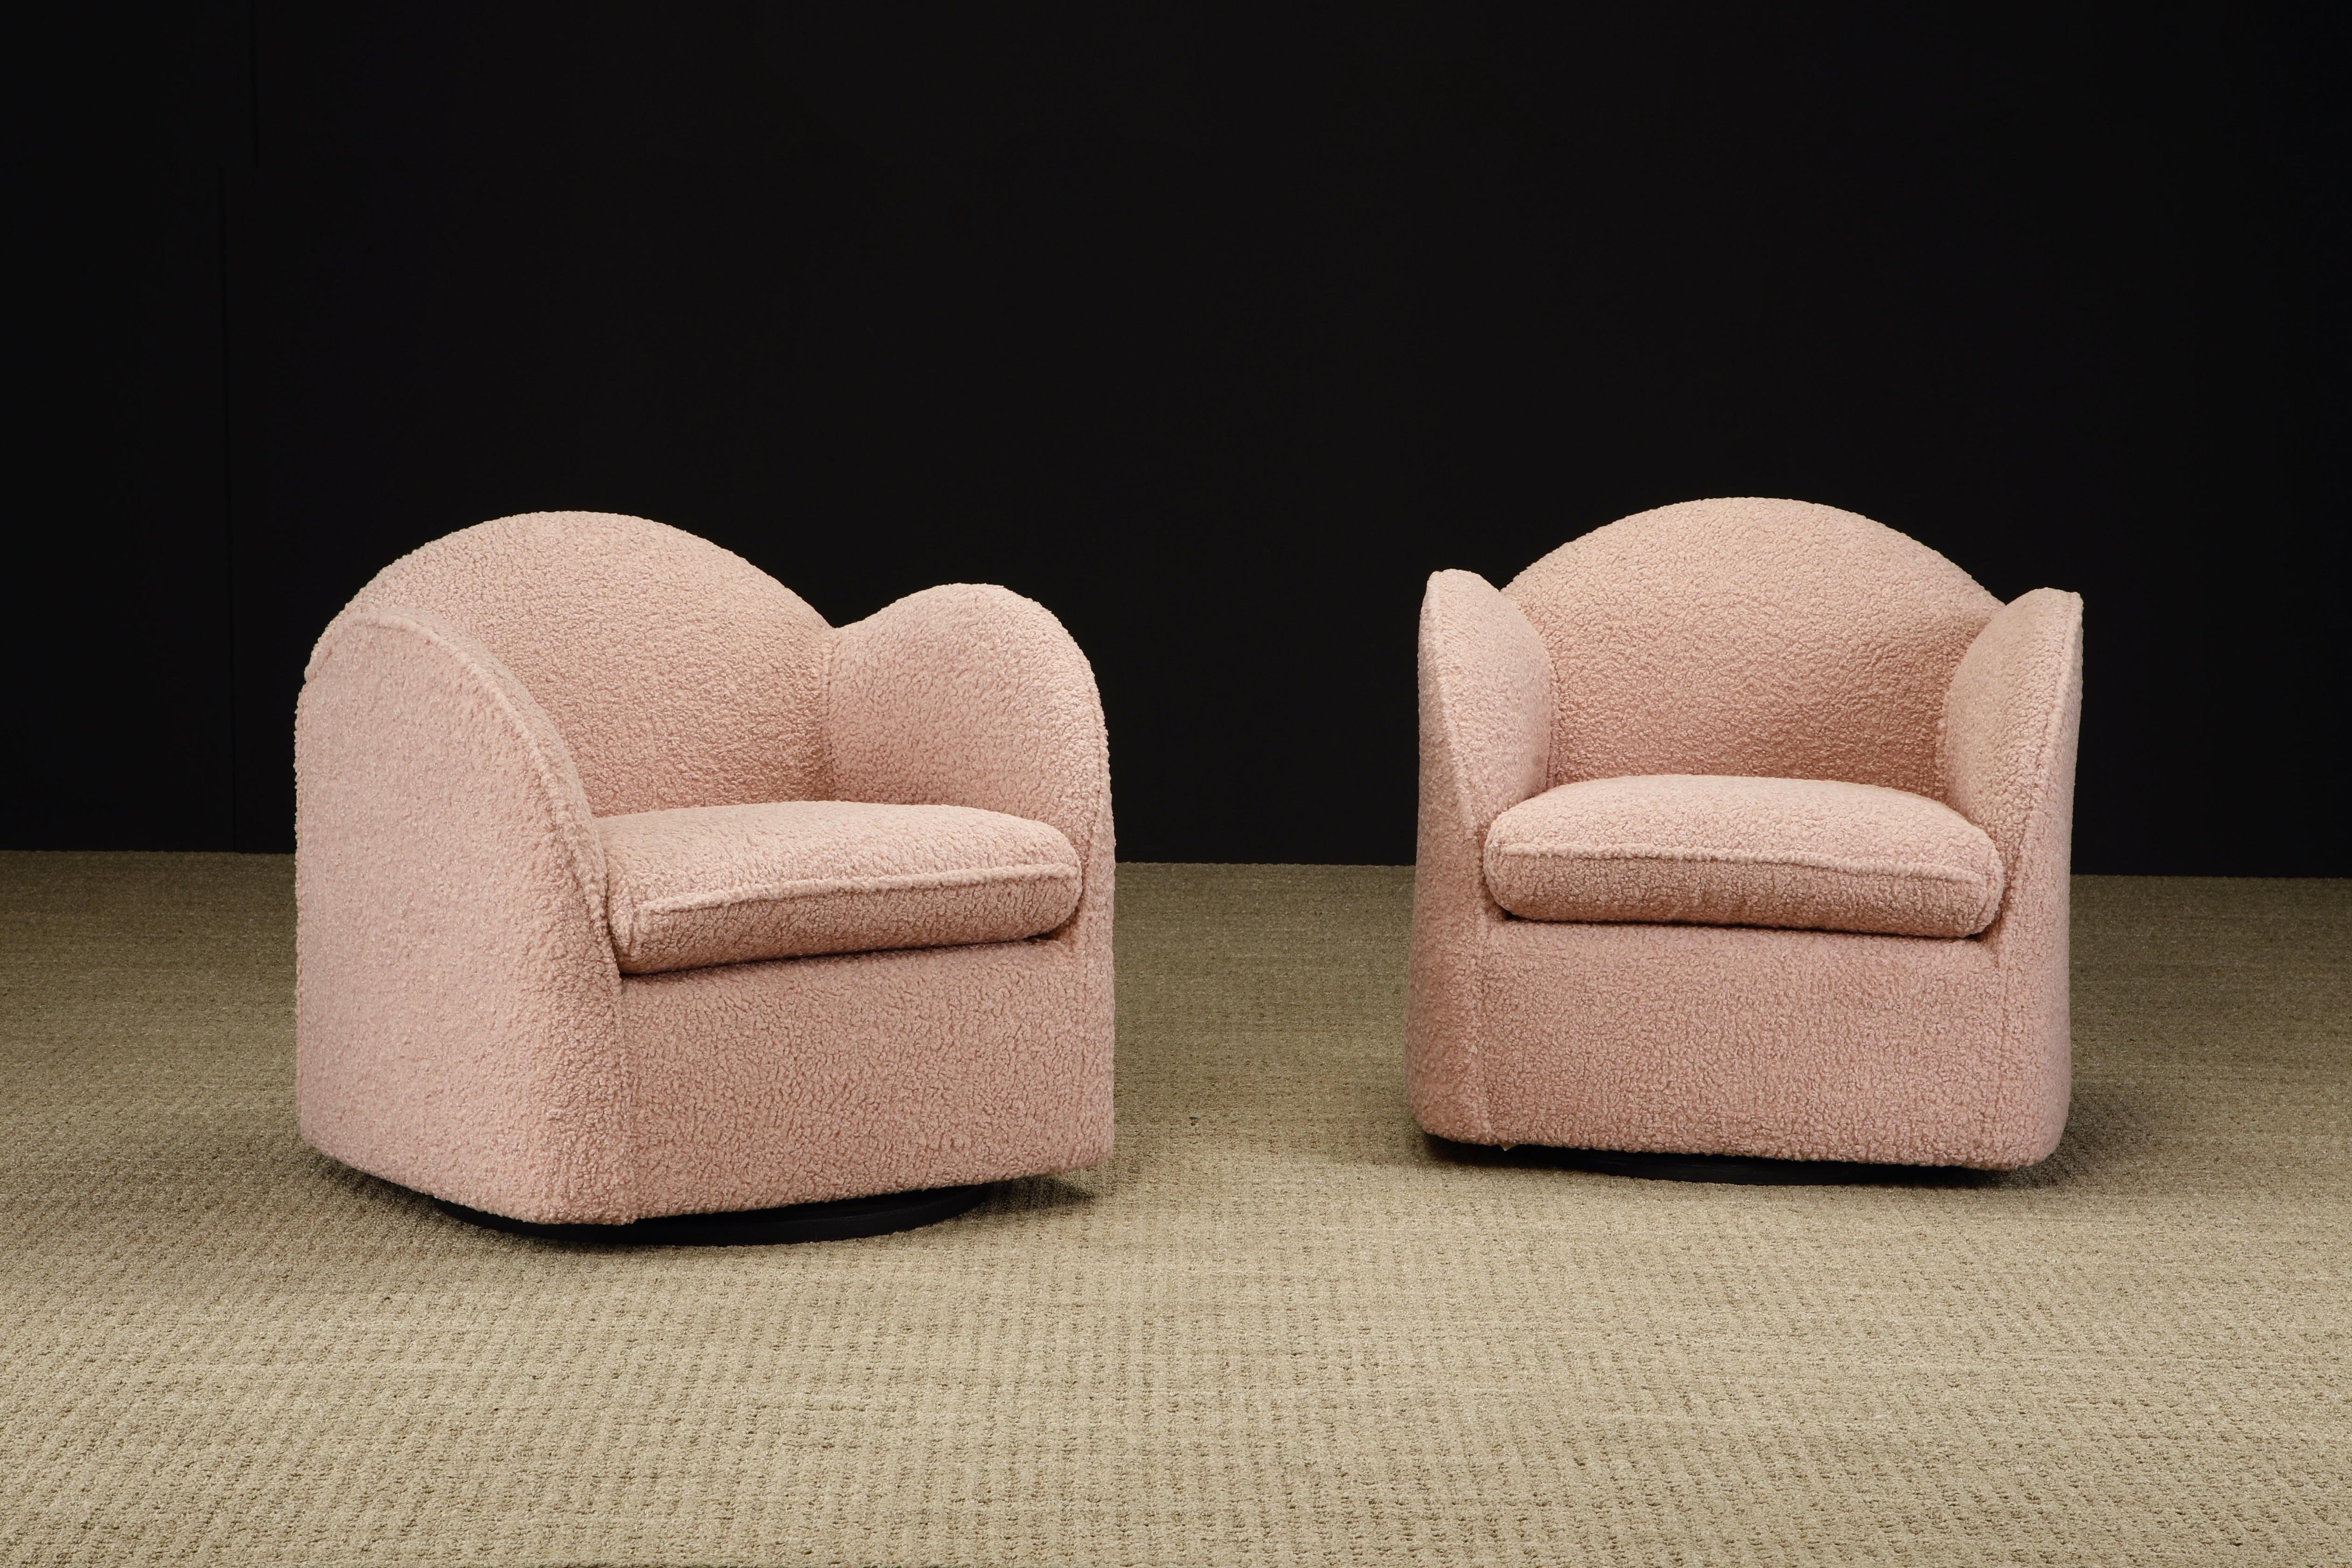 Dieses wunderschöne und sehr einzigartige Paar drehbarer Clubsessel wurde neu mit einem weichen und genoppten rosa Bouclé-Stoff bezogen. Beide Stühle sind mit Directional-Etiketten signiert und wurden um 1980 hergestellt. 

Das Design ist recht